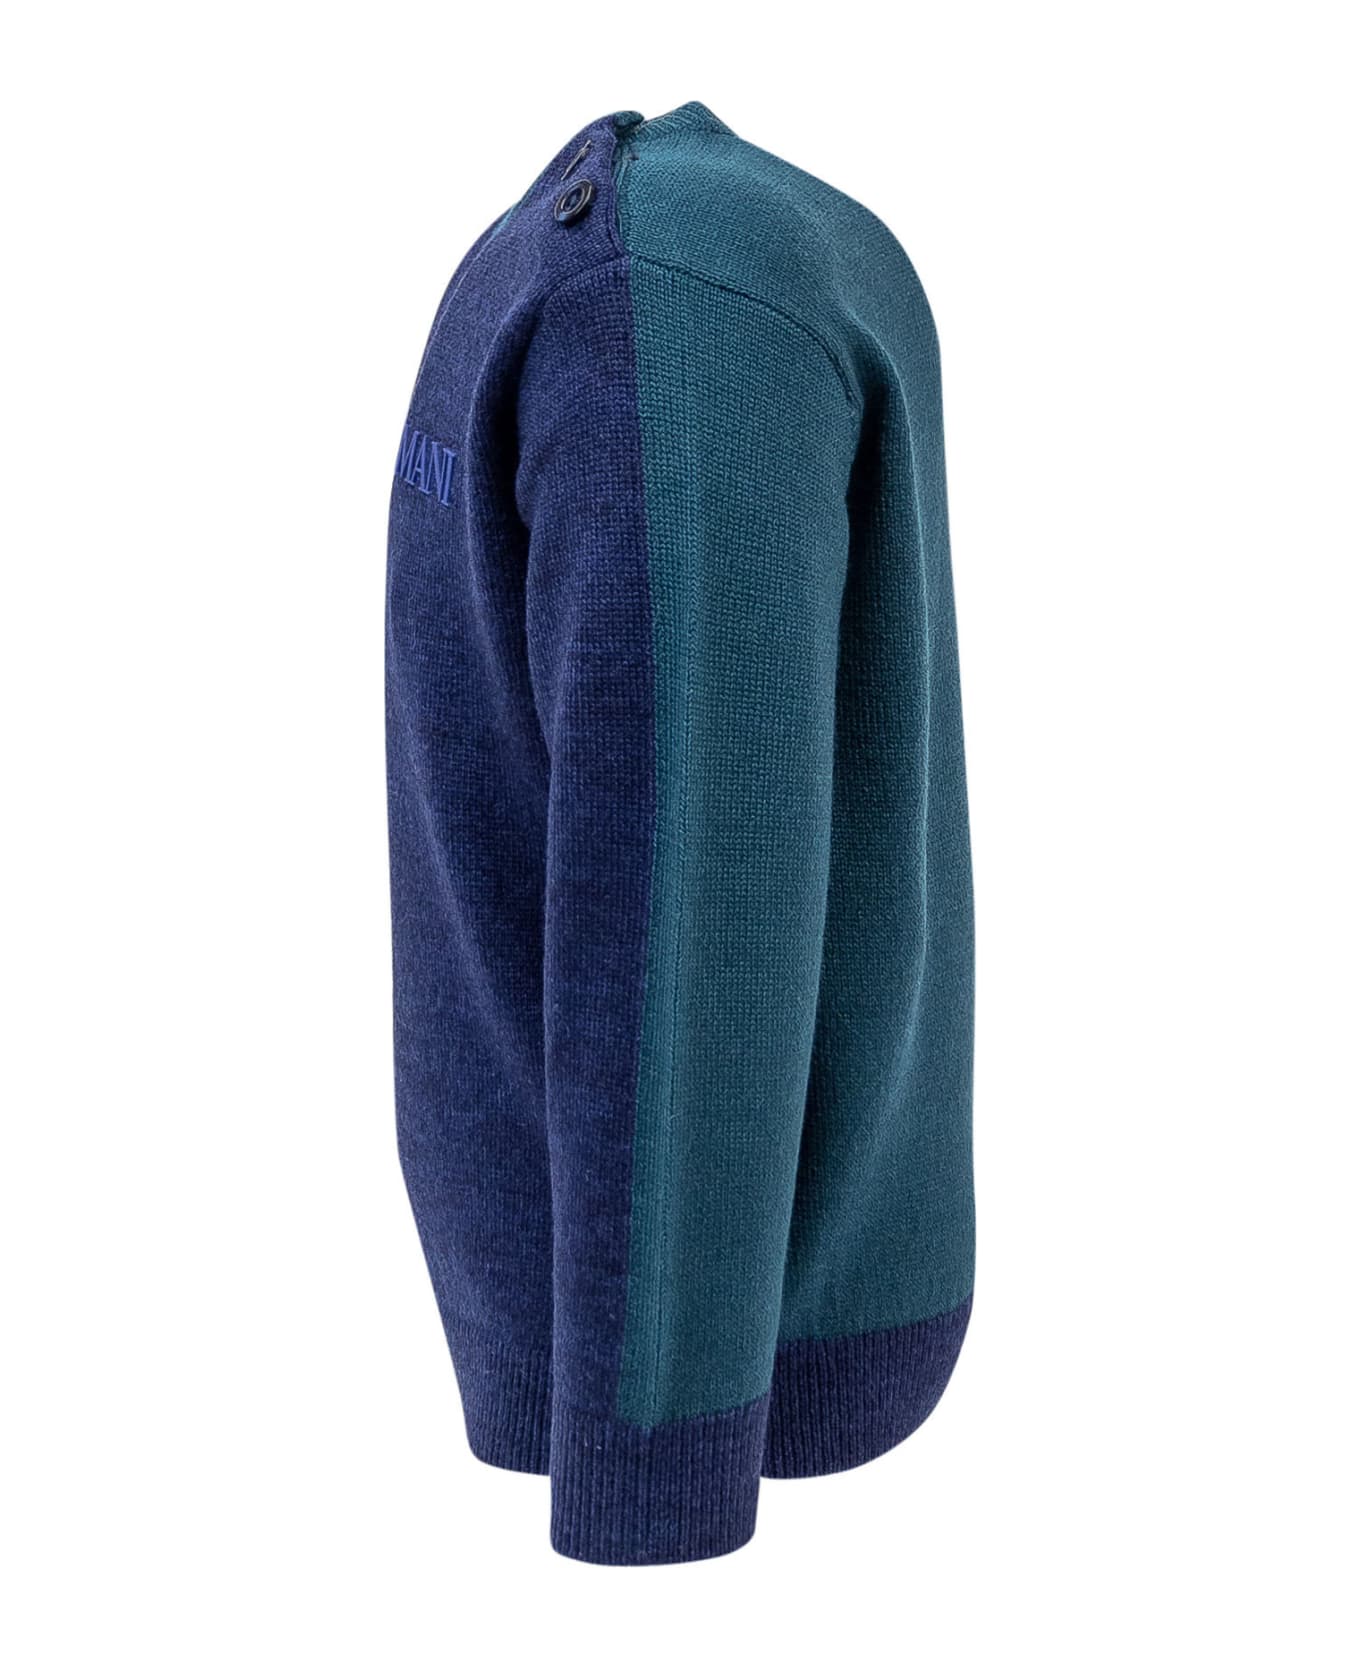 Emporio Armani Pullover Sweater - FANTASIA BLU